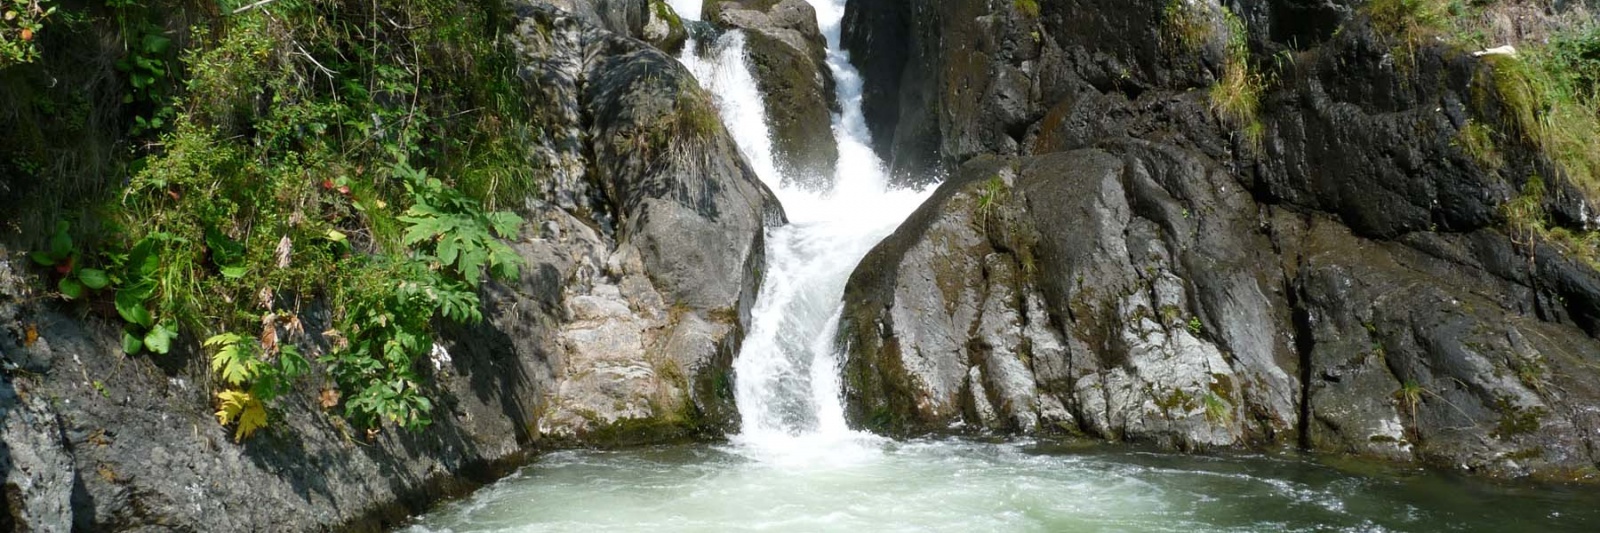 Фото: Ачелманский водопад